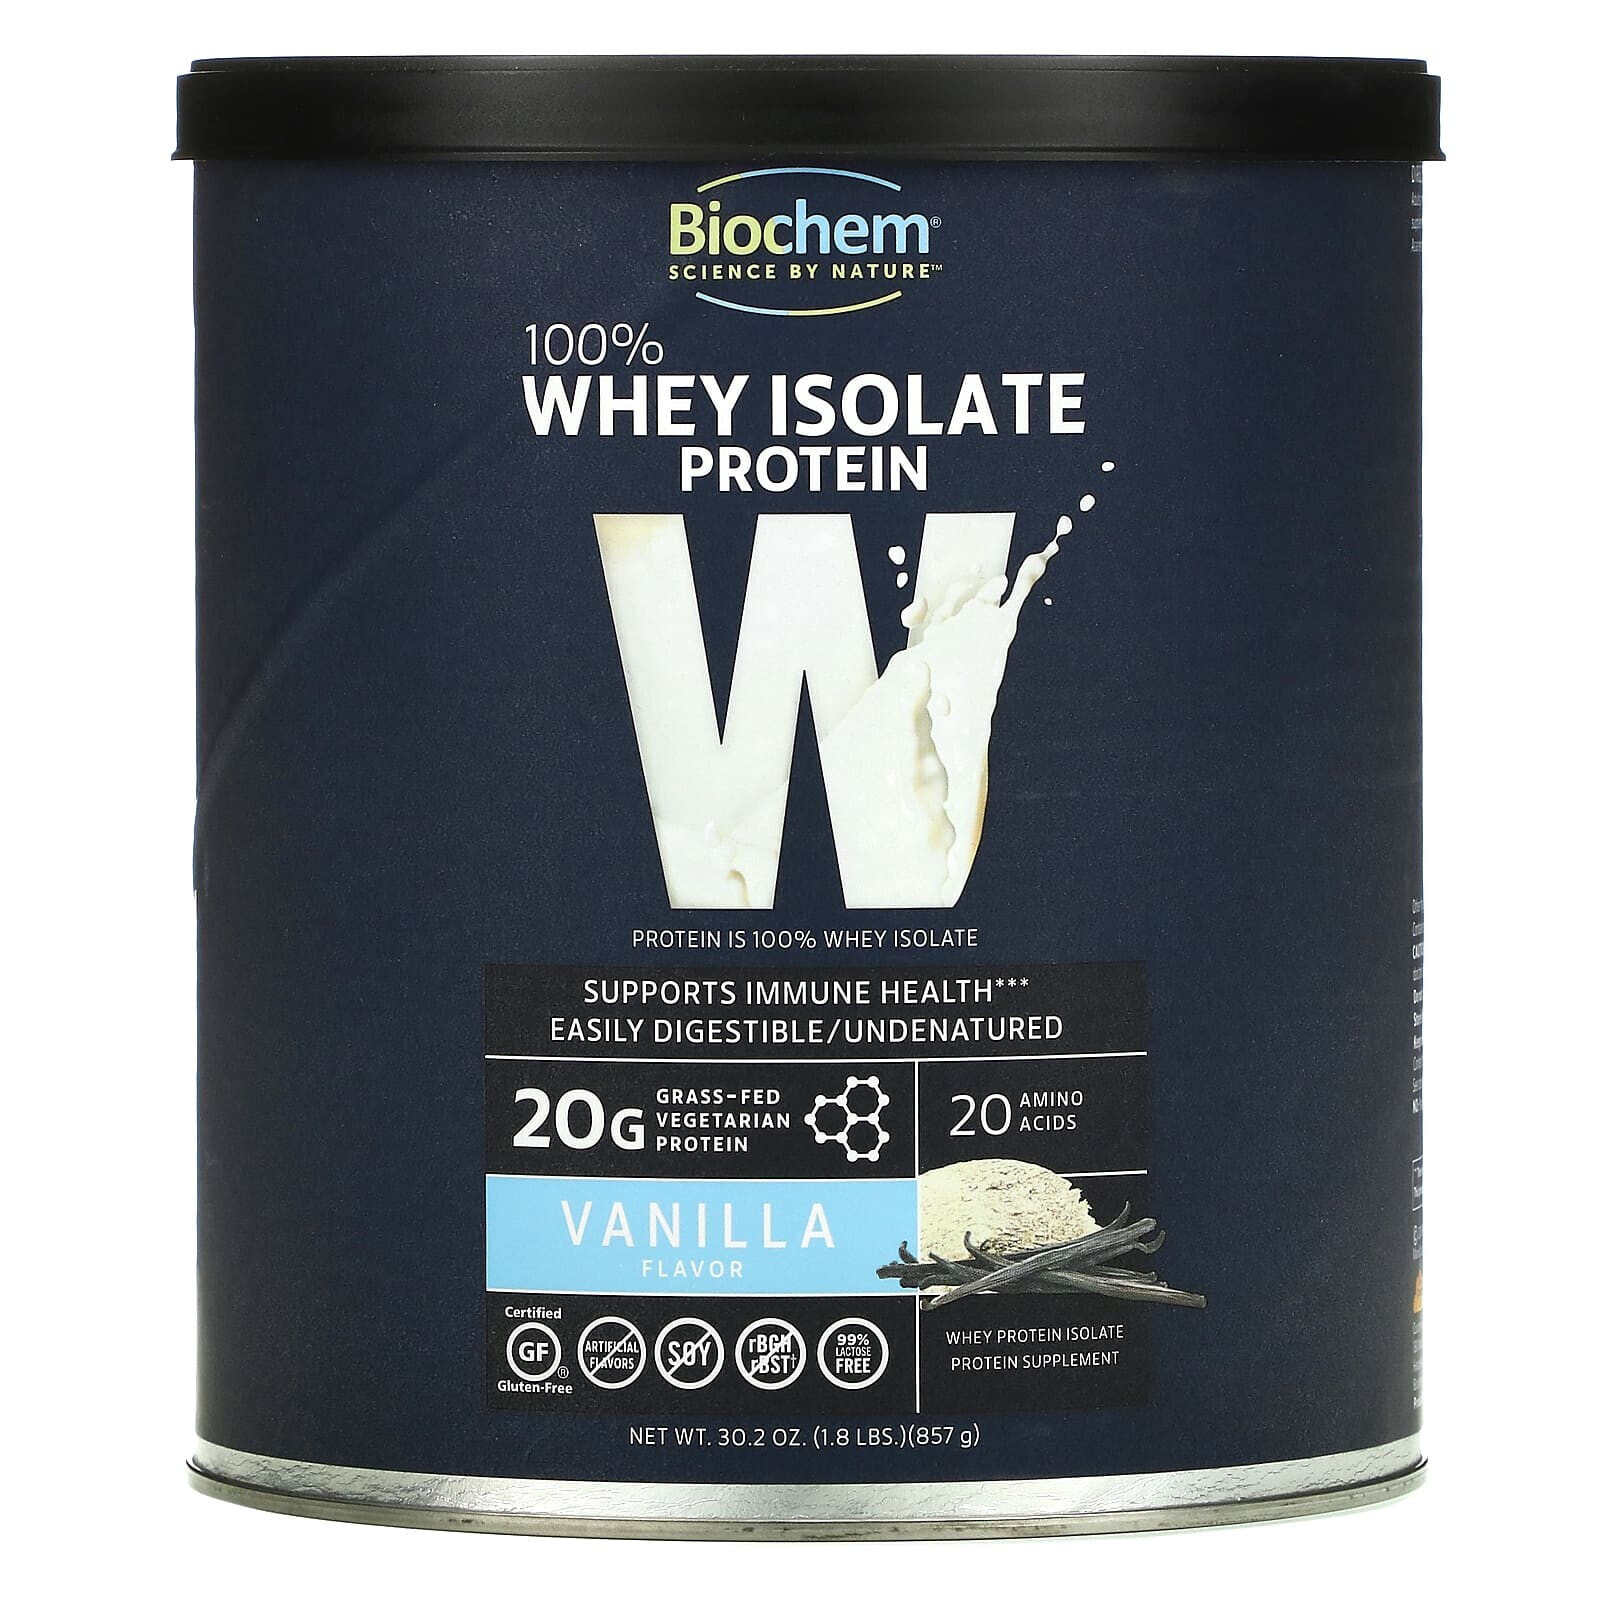 100% Whey Isolate Protein, Vanilla, 1.8 lb (857 g)